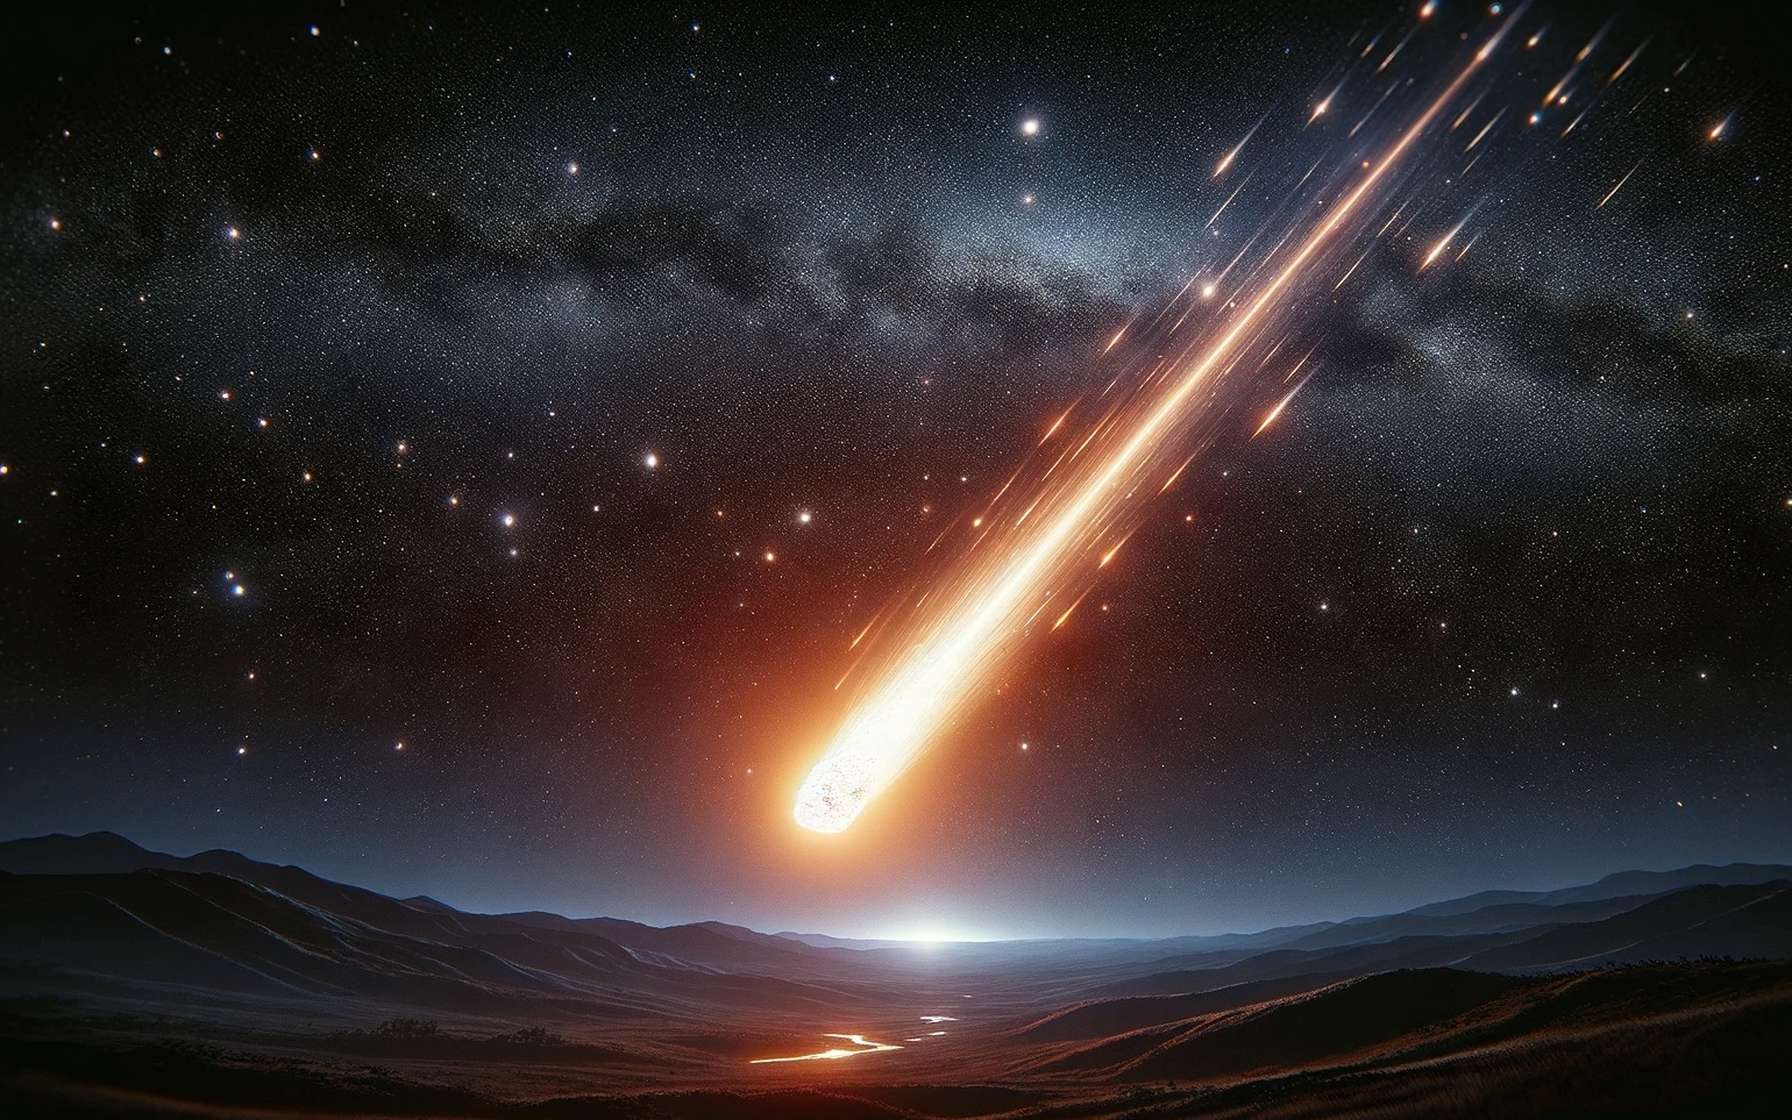 Jamais une météorite n'avait tourné aussi vite que celle observée dans le ciel de Berlin